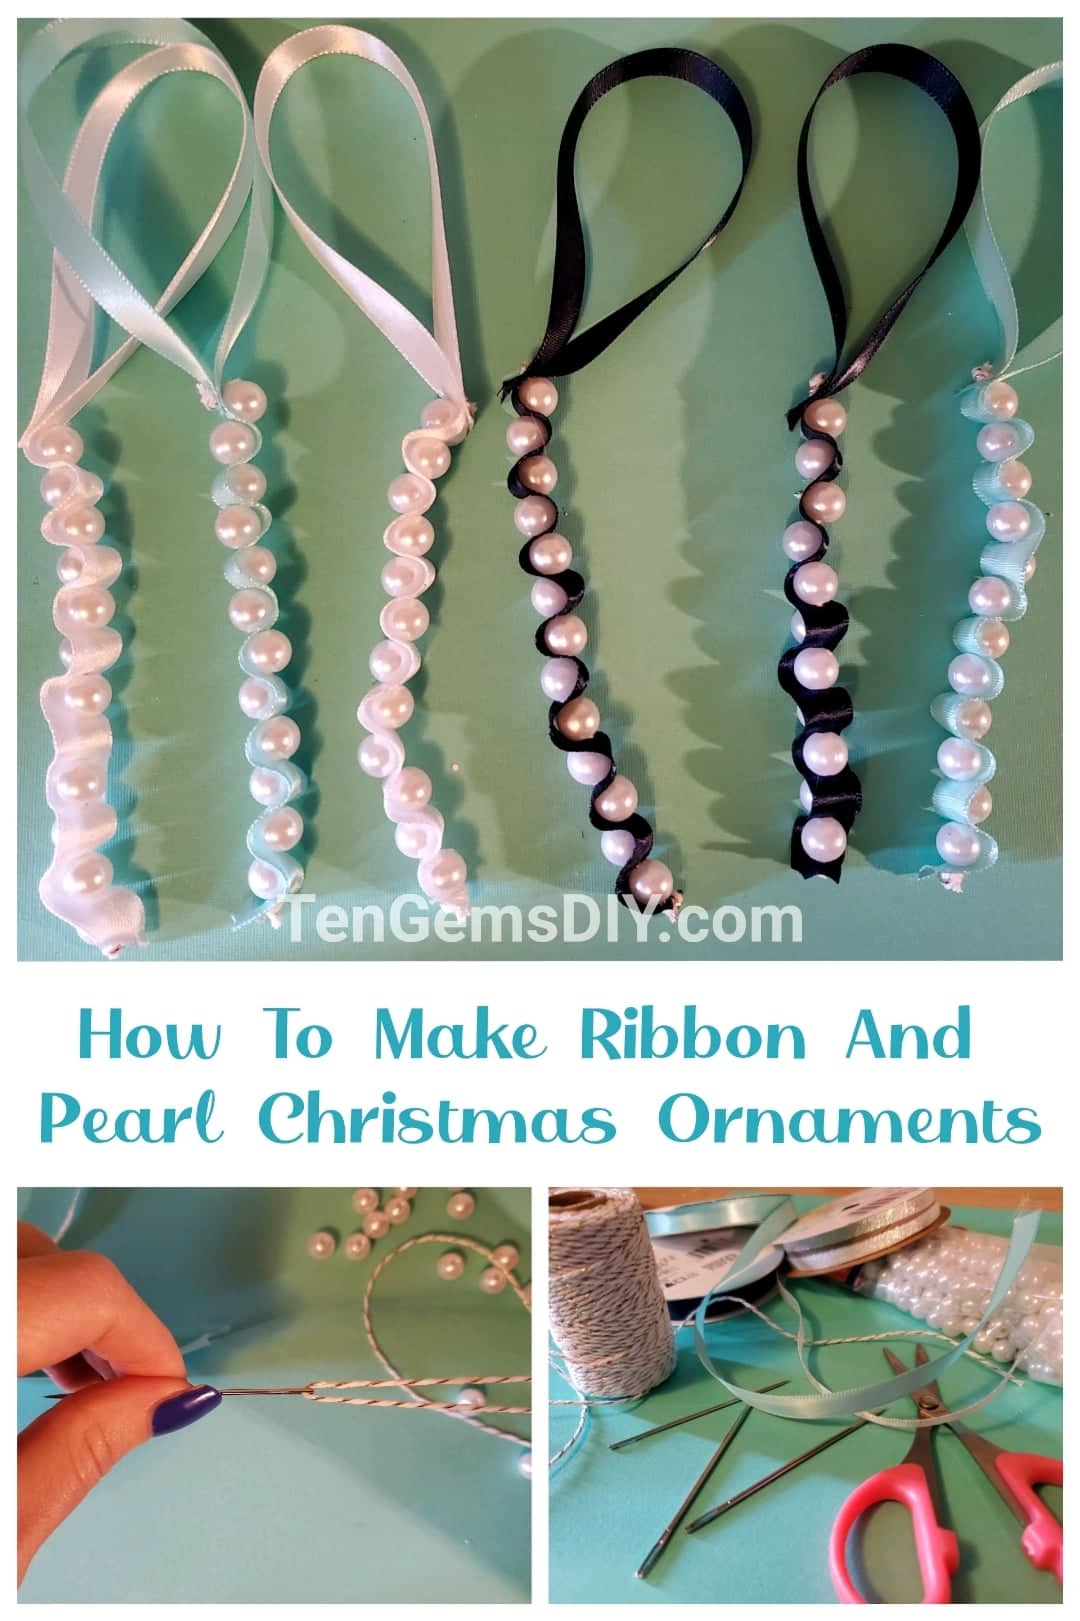 Ribbon and Pearl Christmas Ornaments